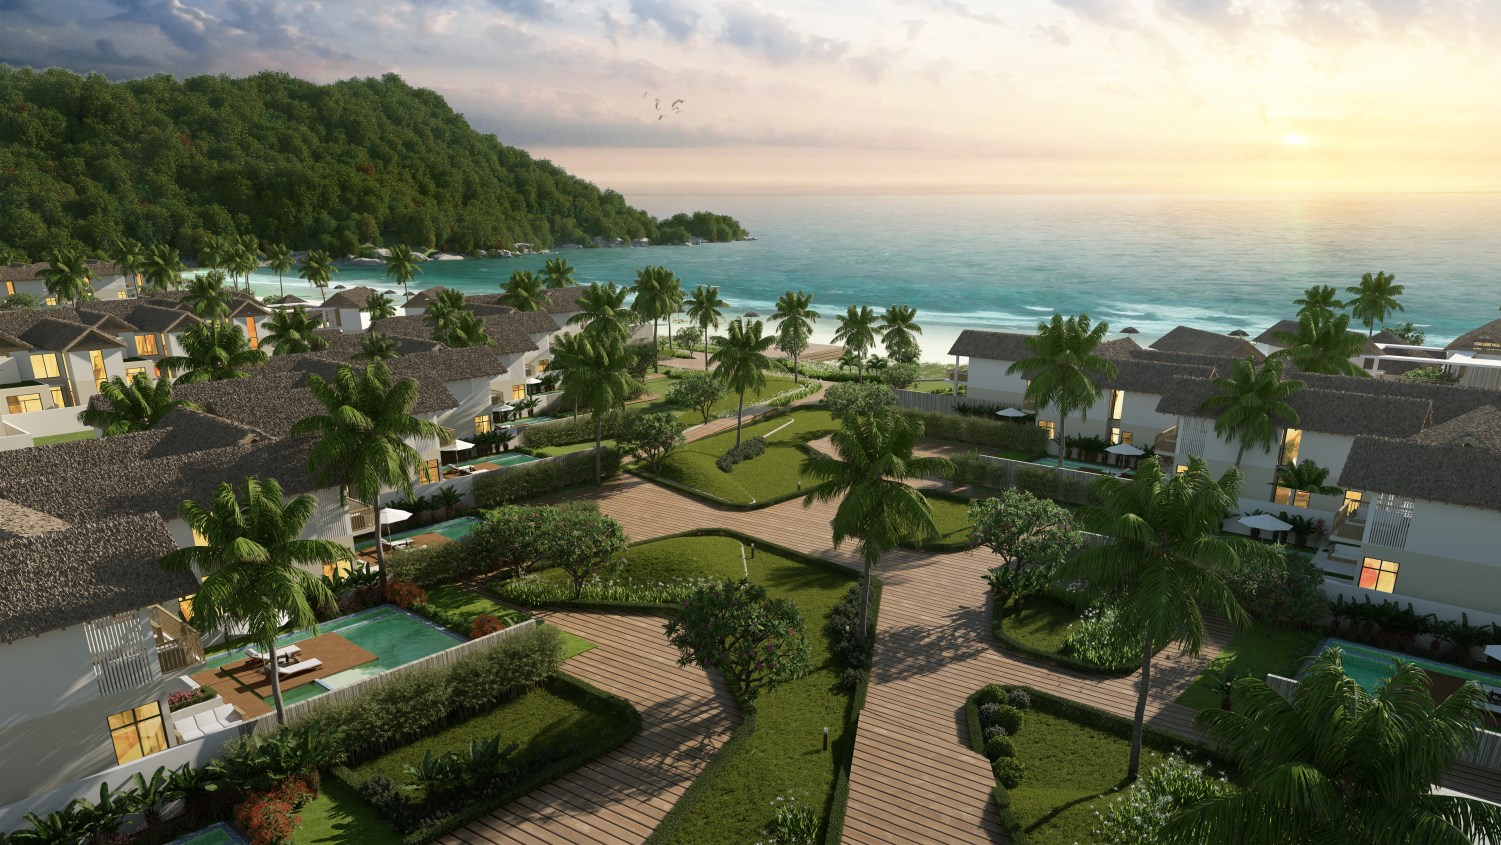 Bãi Kem: Nâng tầm phong cách nghỉ dưỡng nơi đảo Ngọc